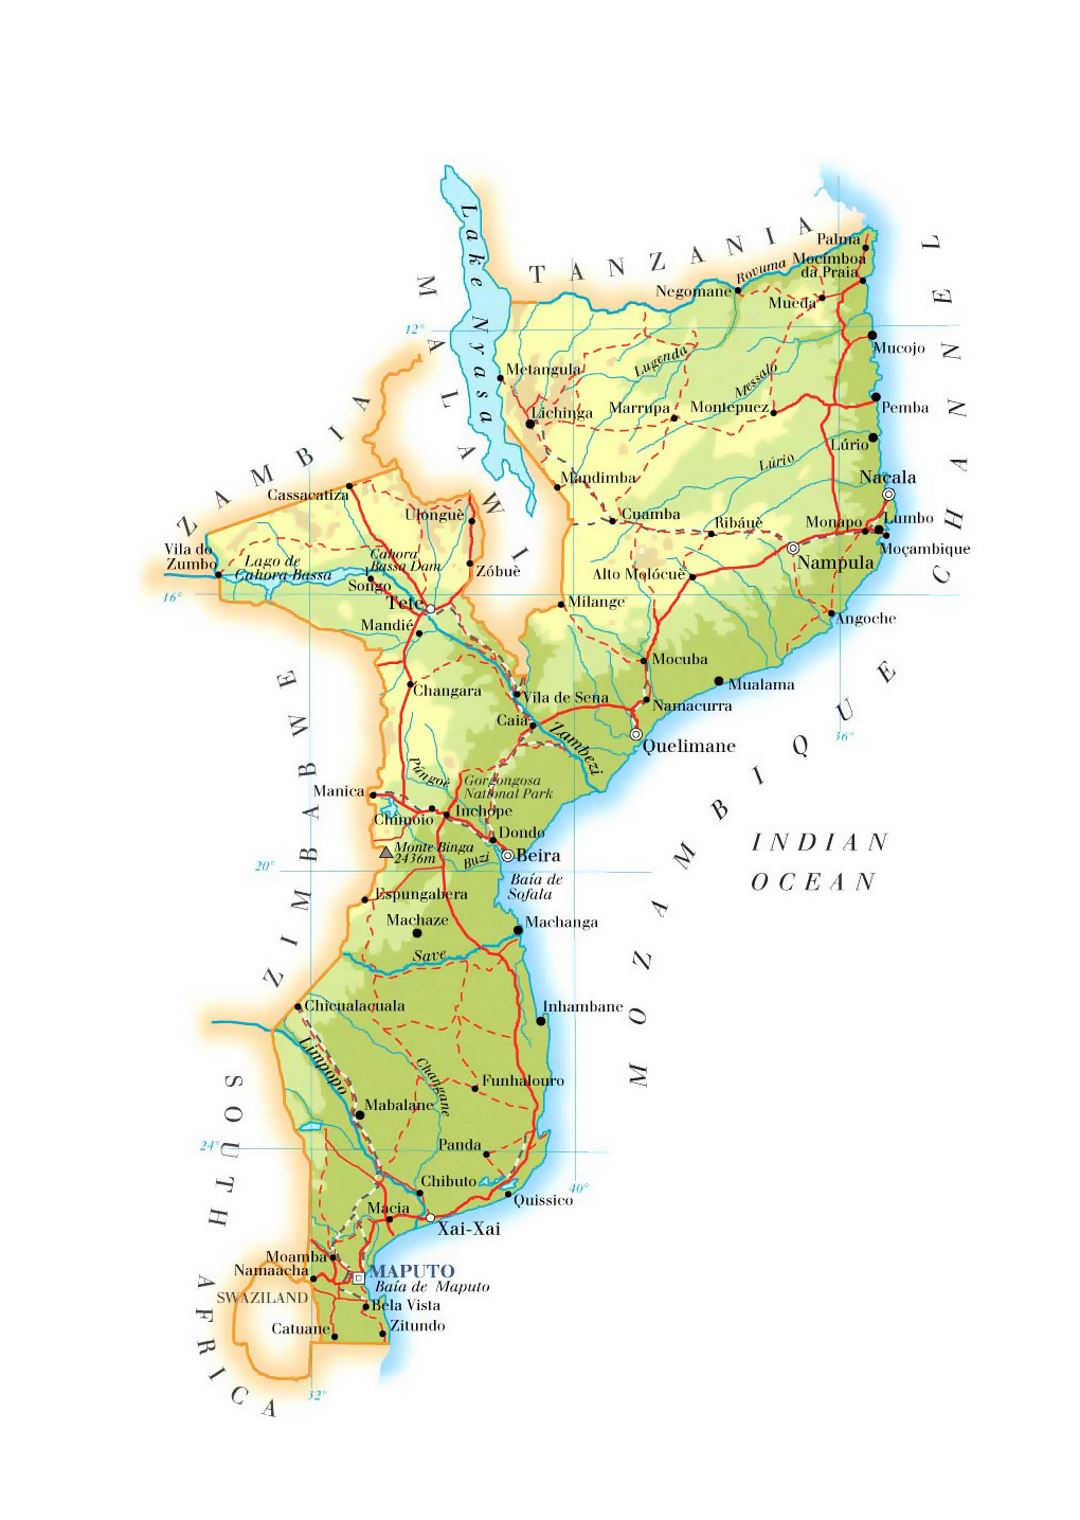 Детальная карта высот Мозамбика с дорогами, железными дорогами, городами и аэропортами